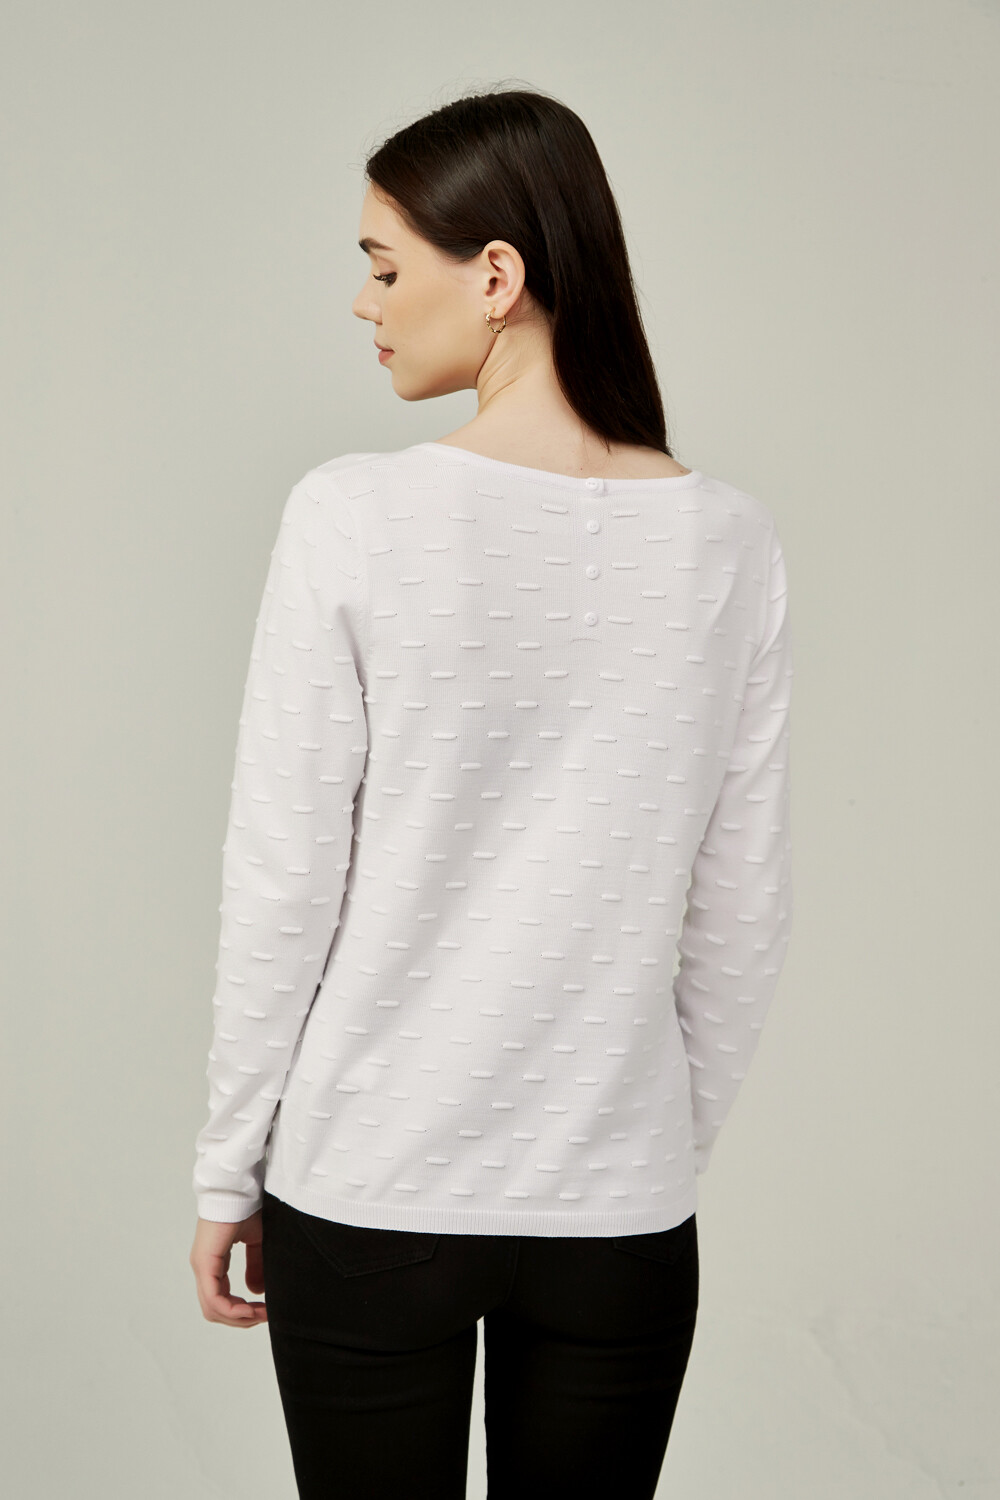 Sweater Colorpi Blanco